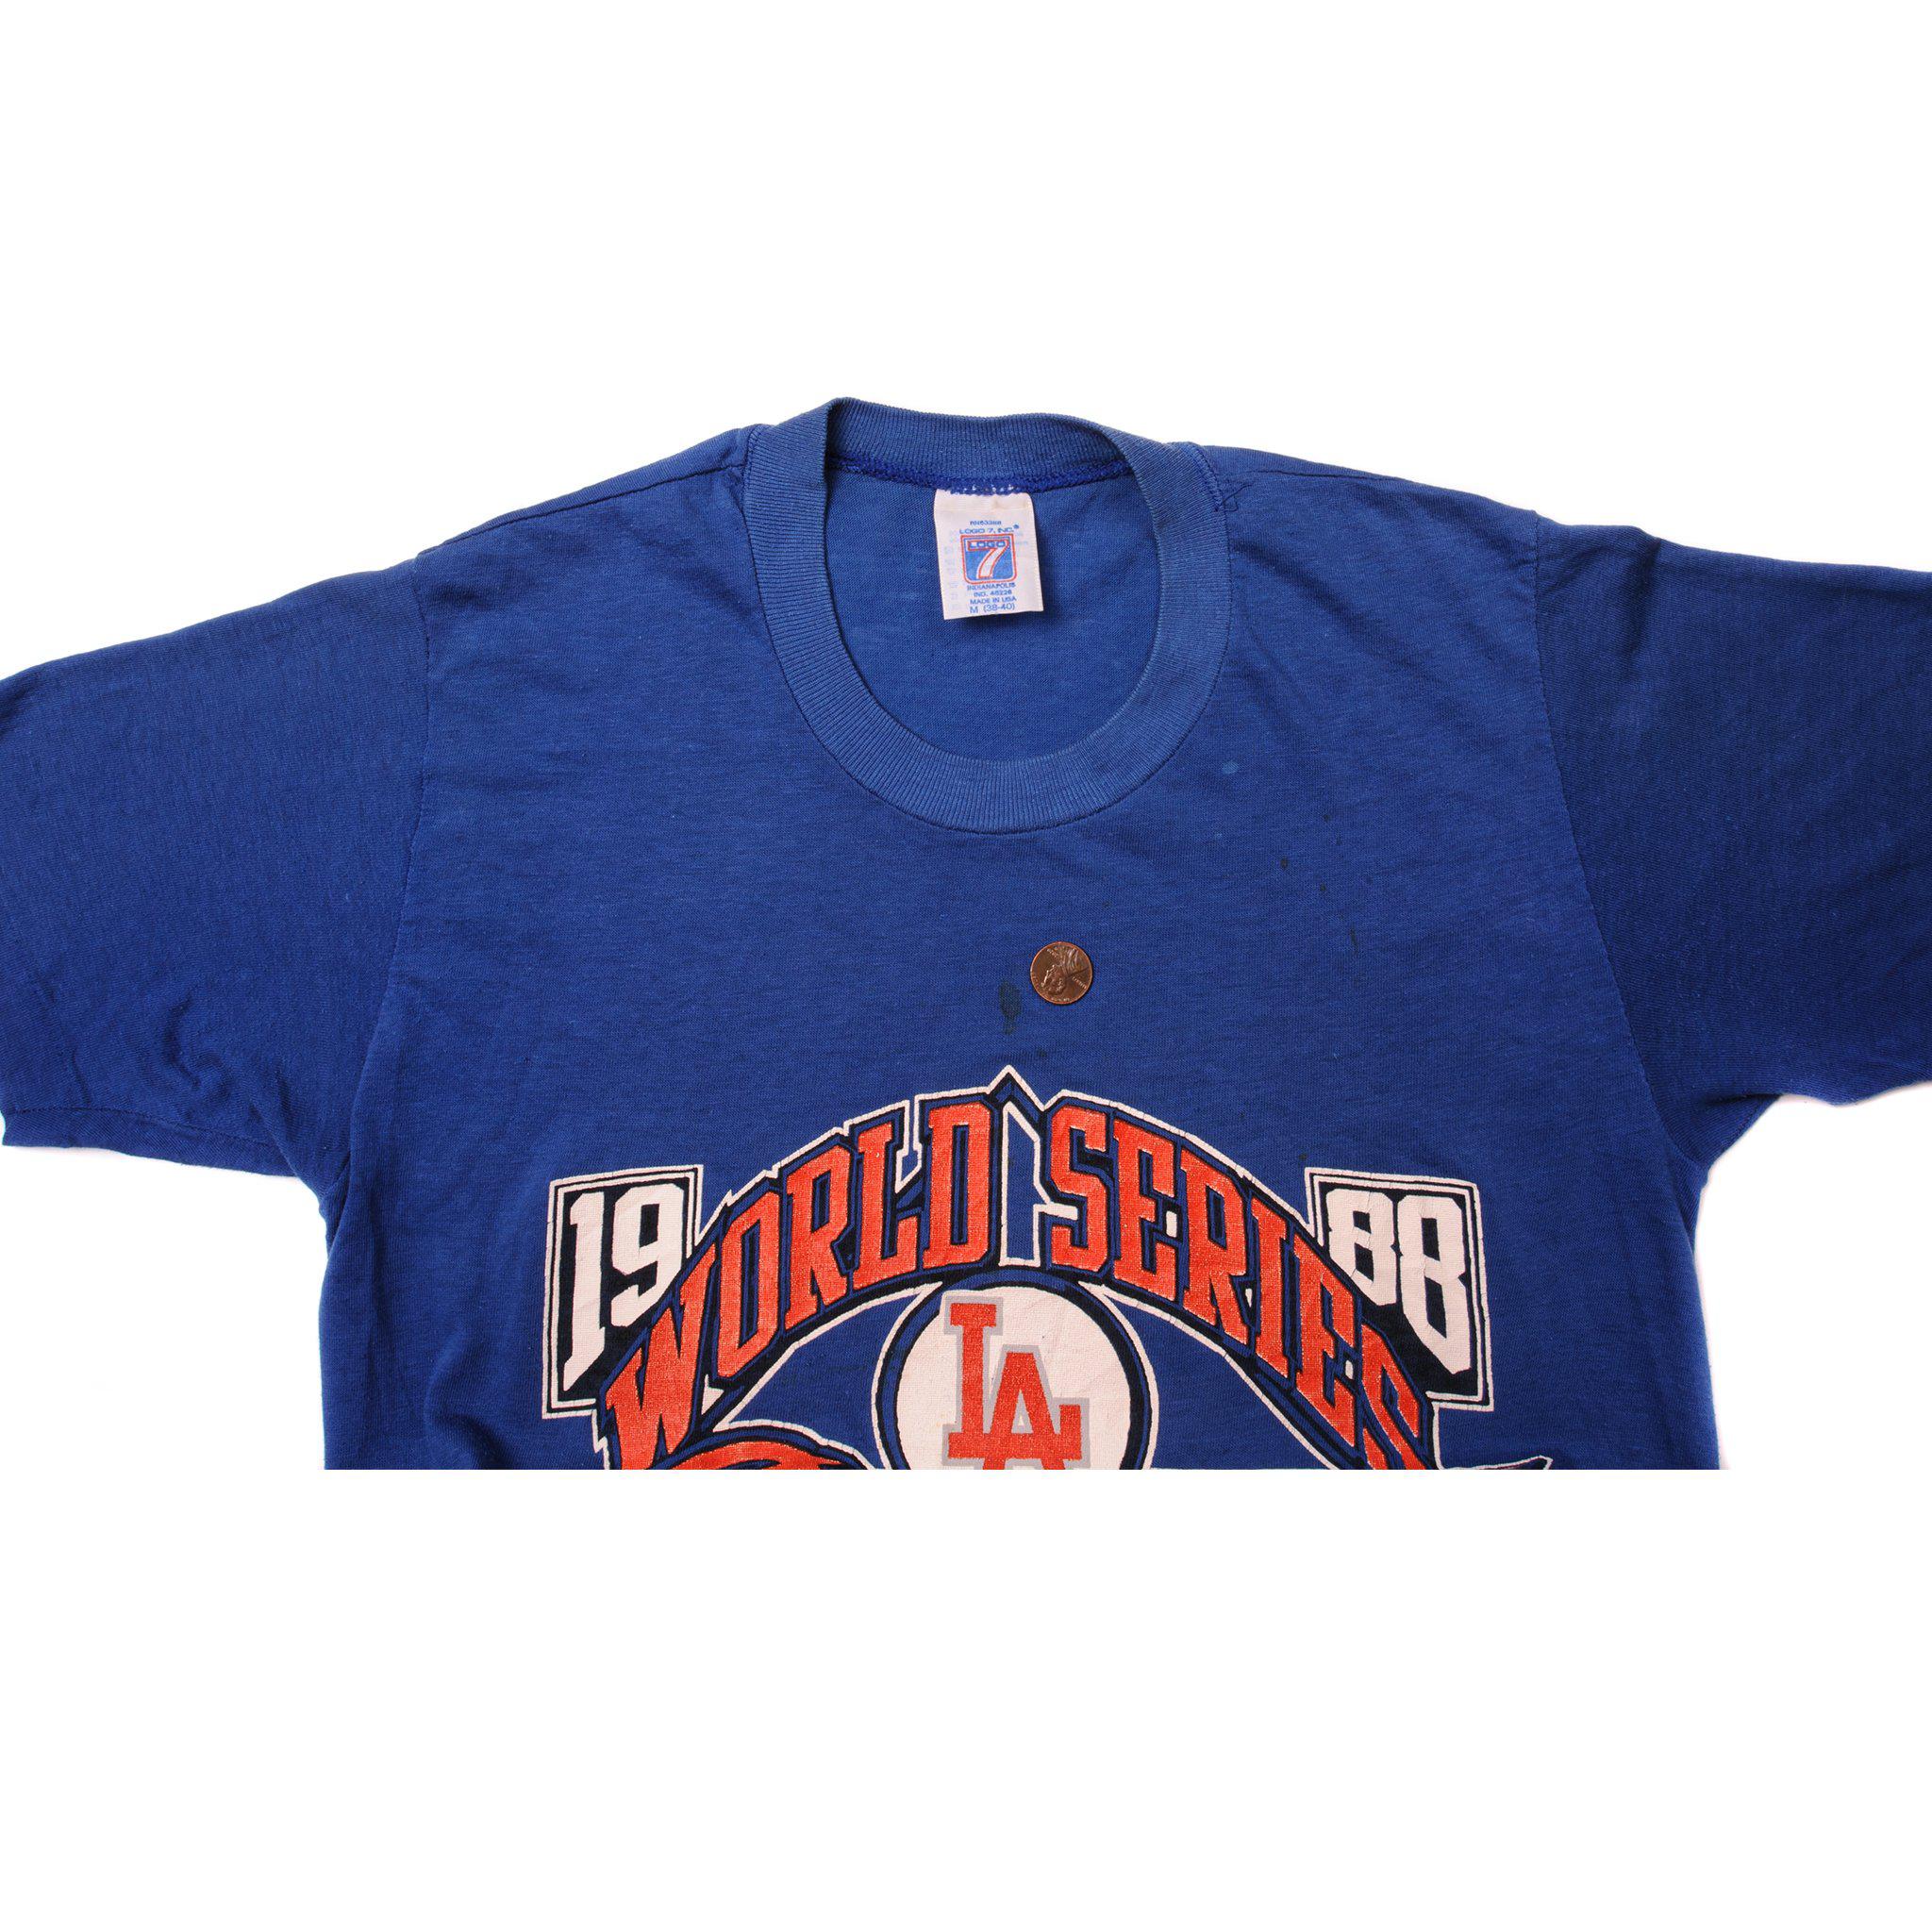 Vintage LA Dodgers World Series T-Shirt (1988) 